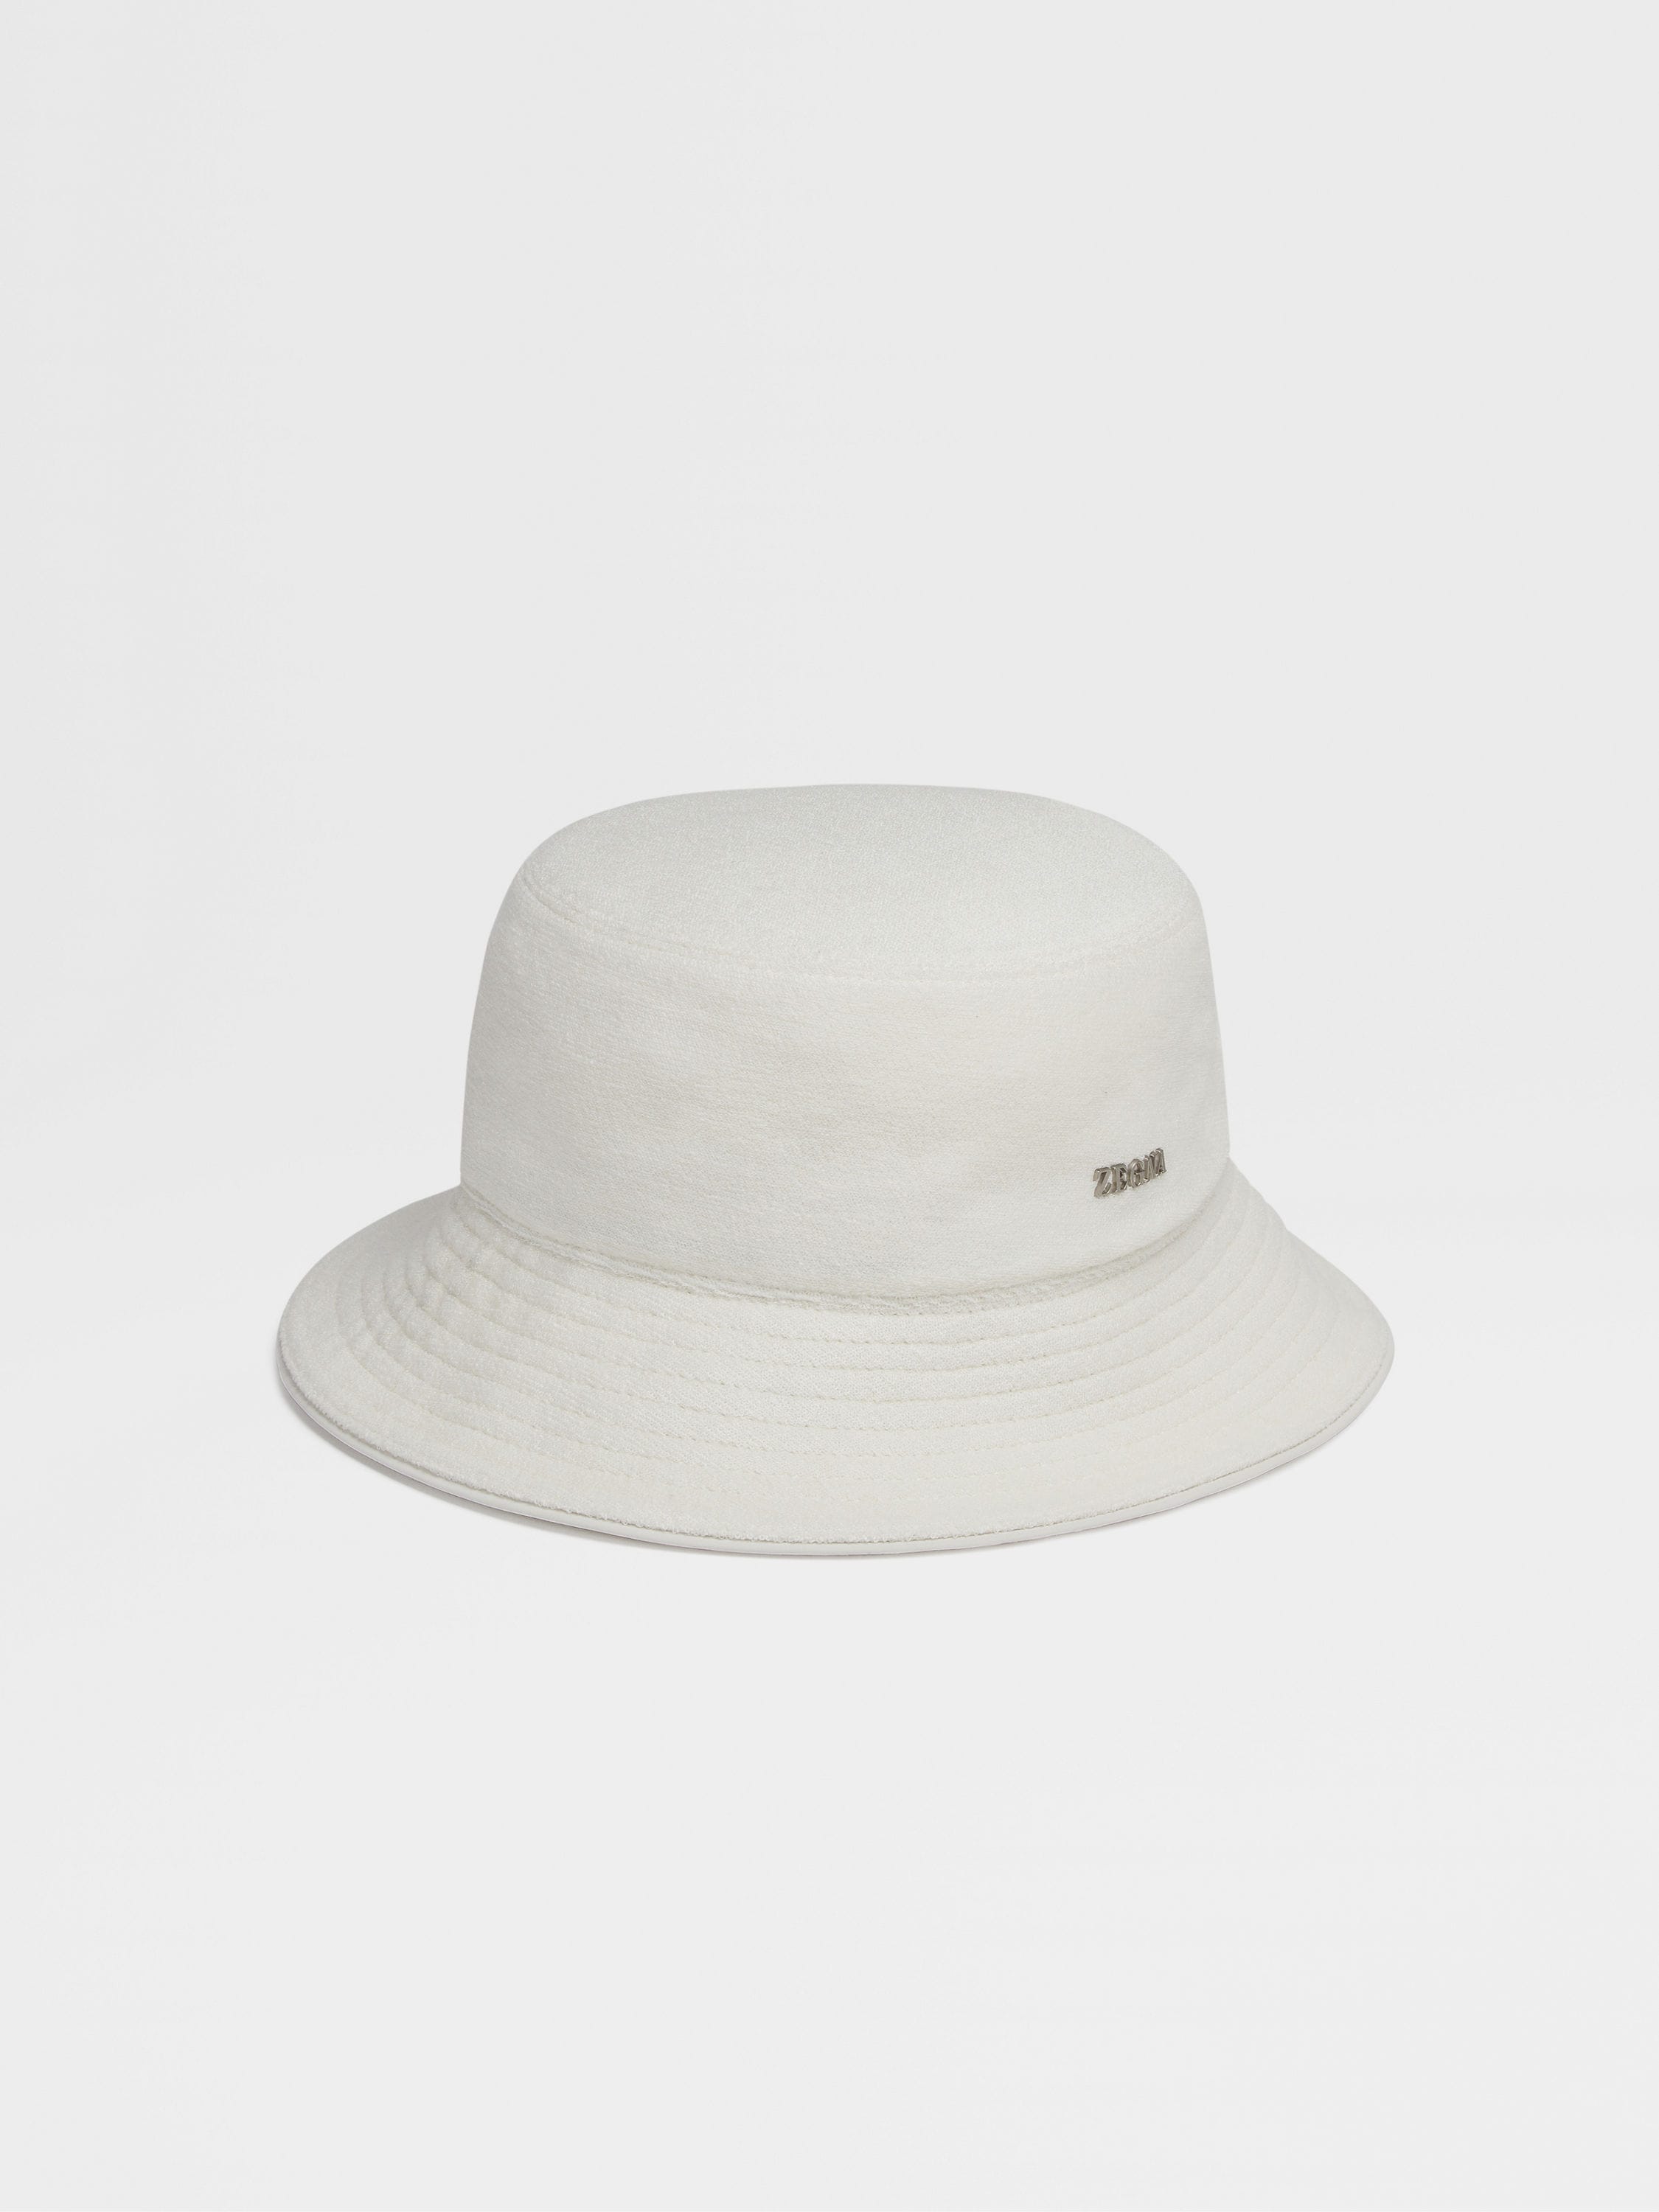 Dust White Cotton and Silk Bucket Hat